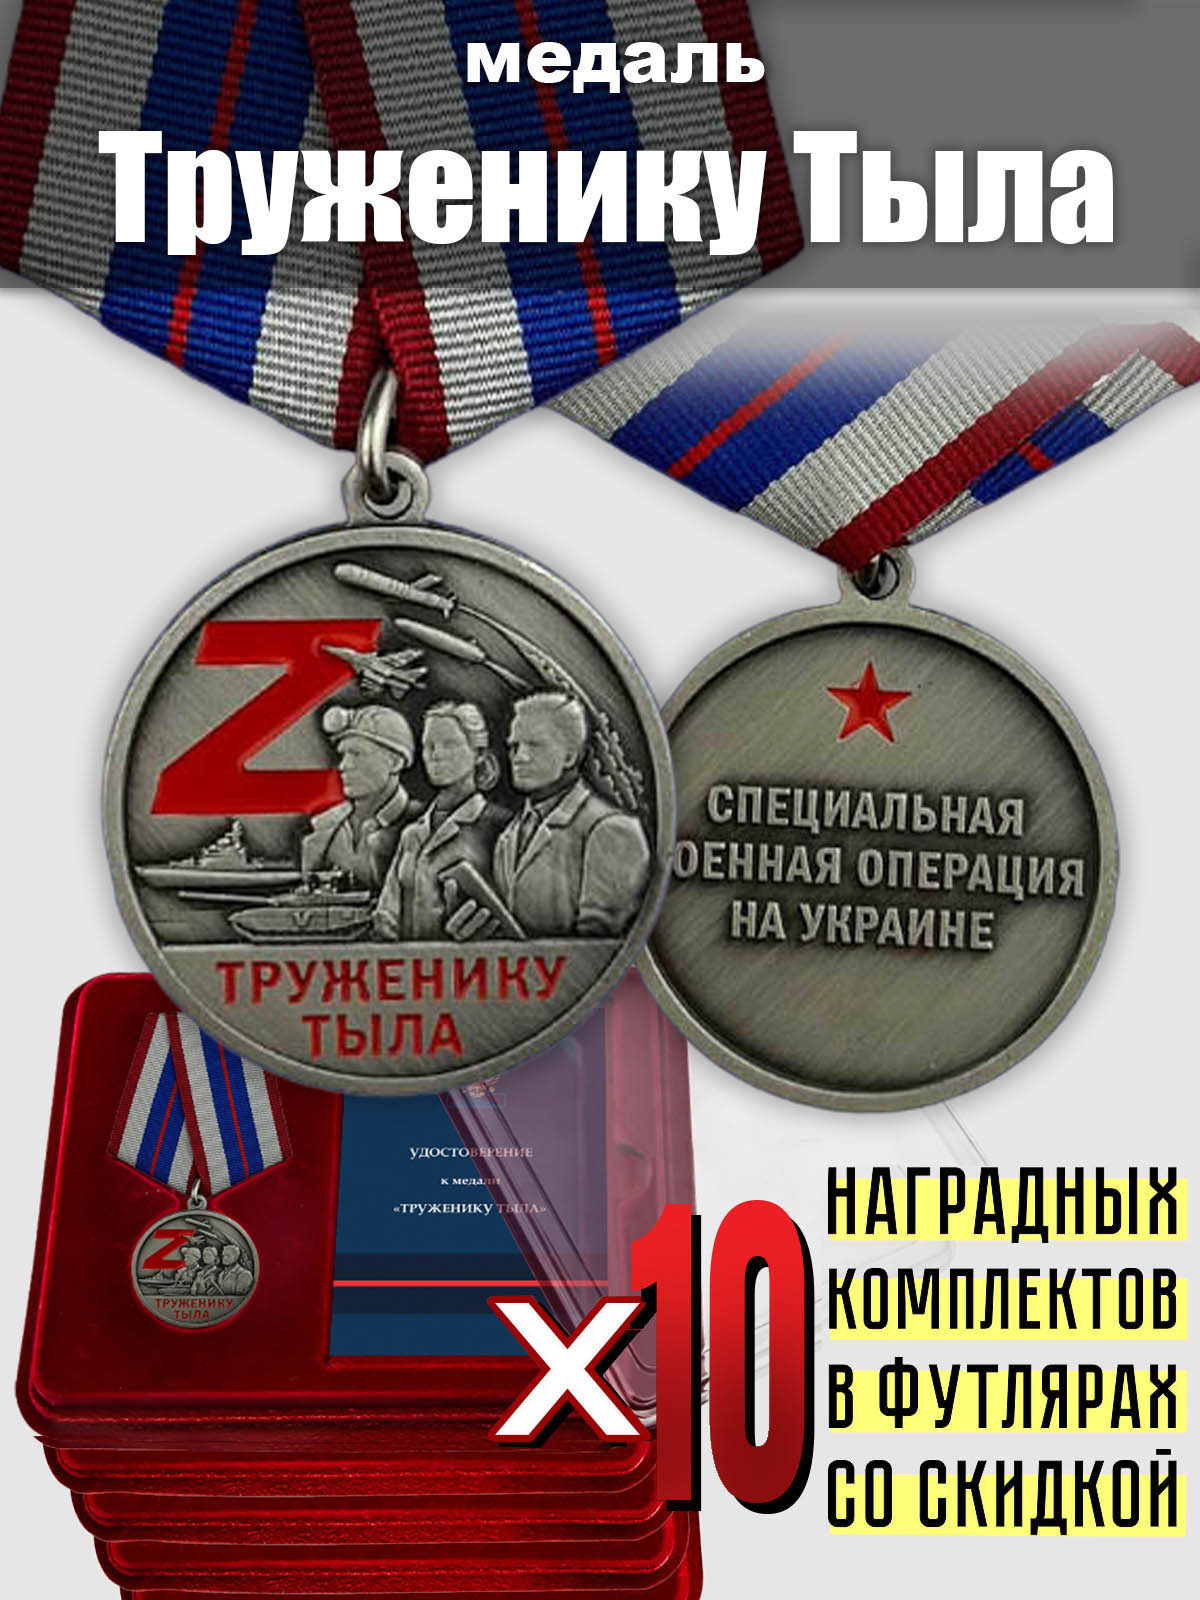 Медали СВО для тружеников тыла (10 шт.) 